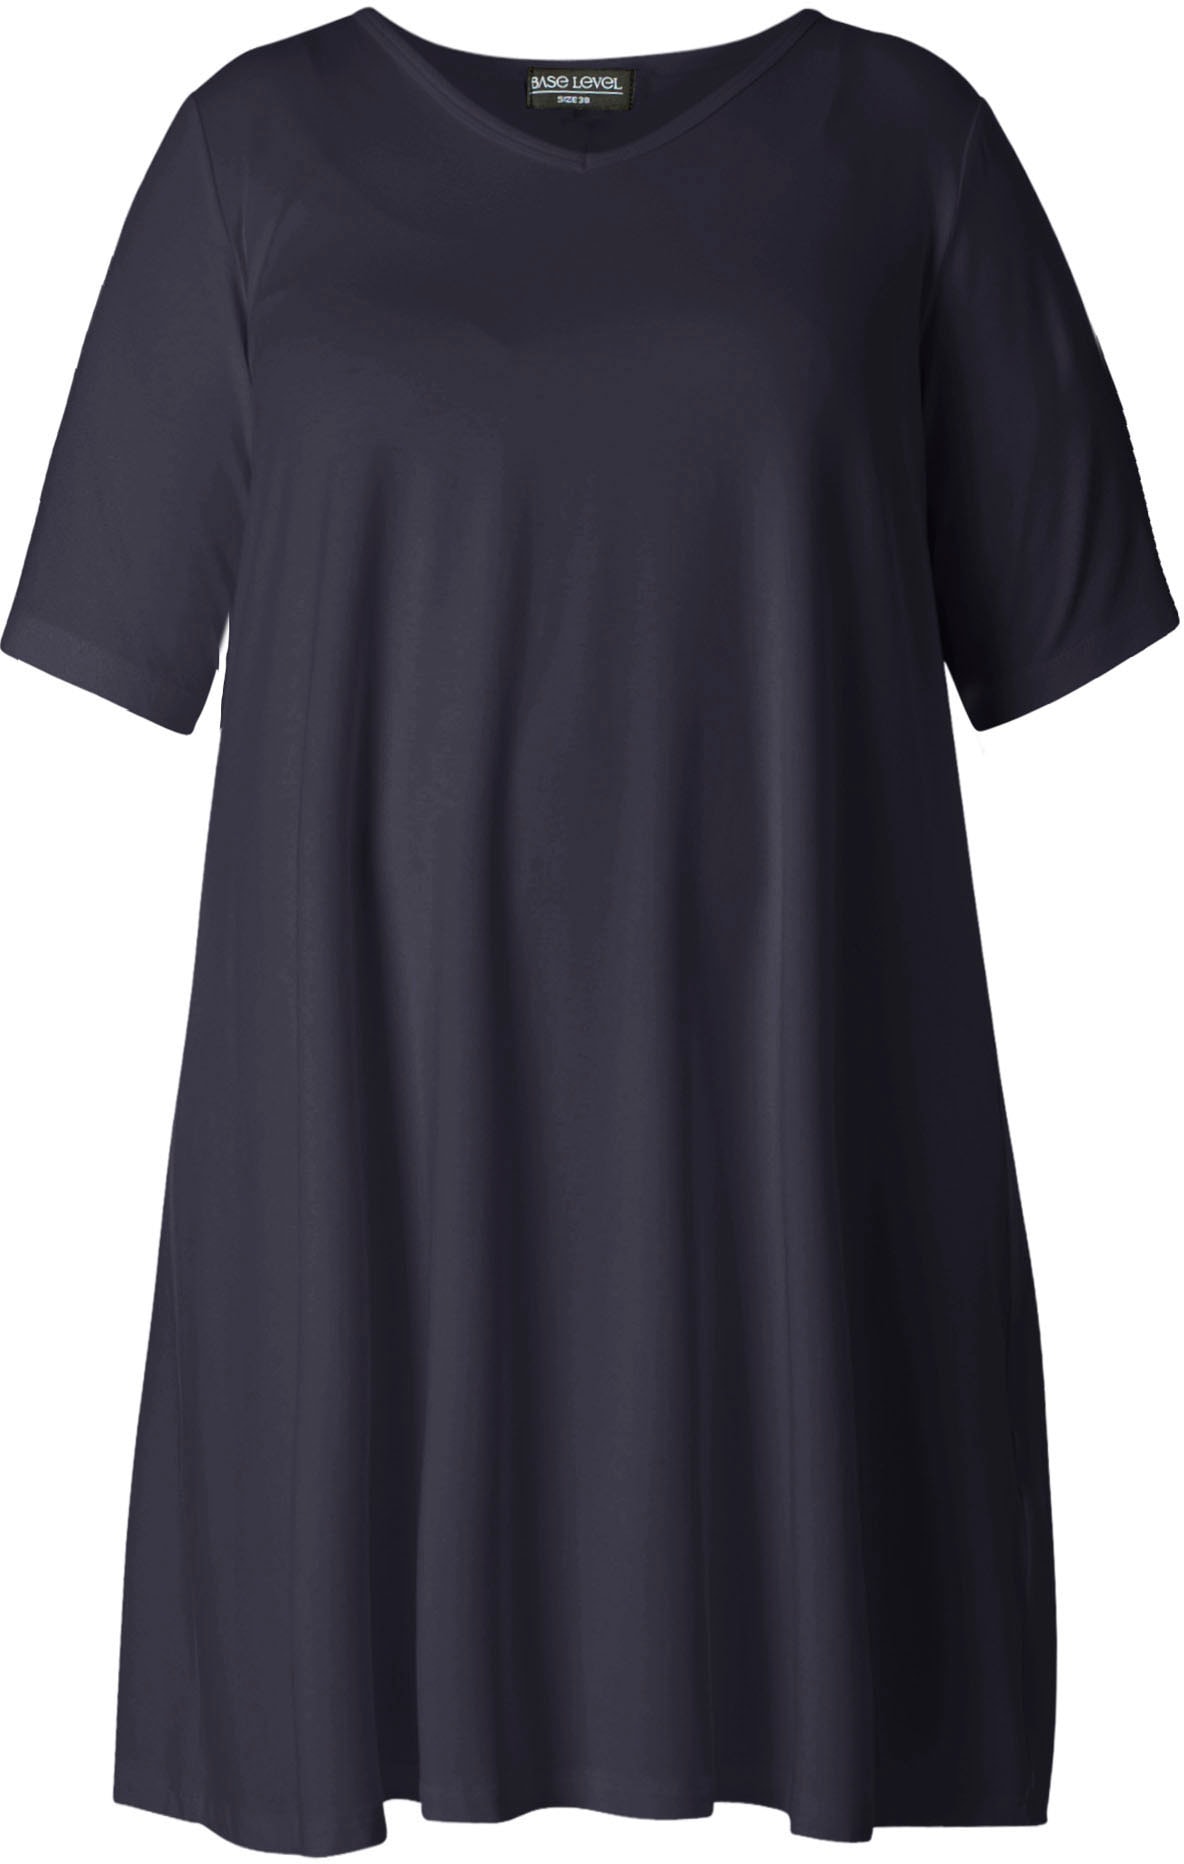 ♕ Base Level Curvy Shirtkleid »Abernathy«, In leicht ausgestellter Form  versandkostenfrei bestellen